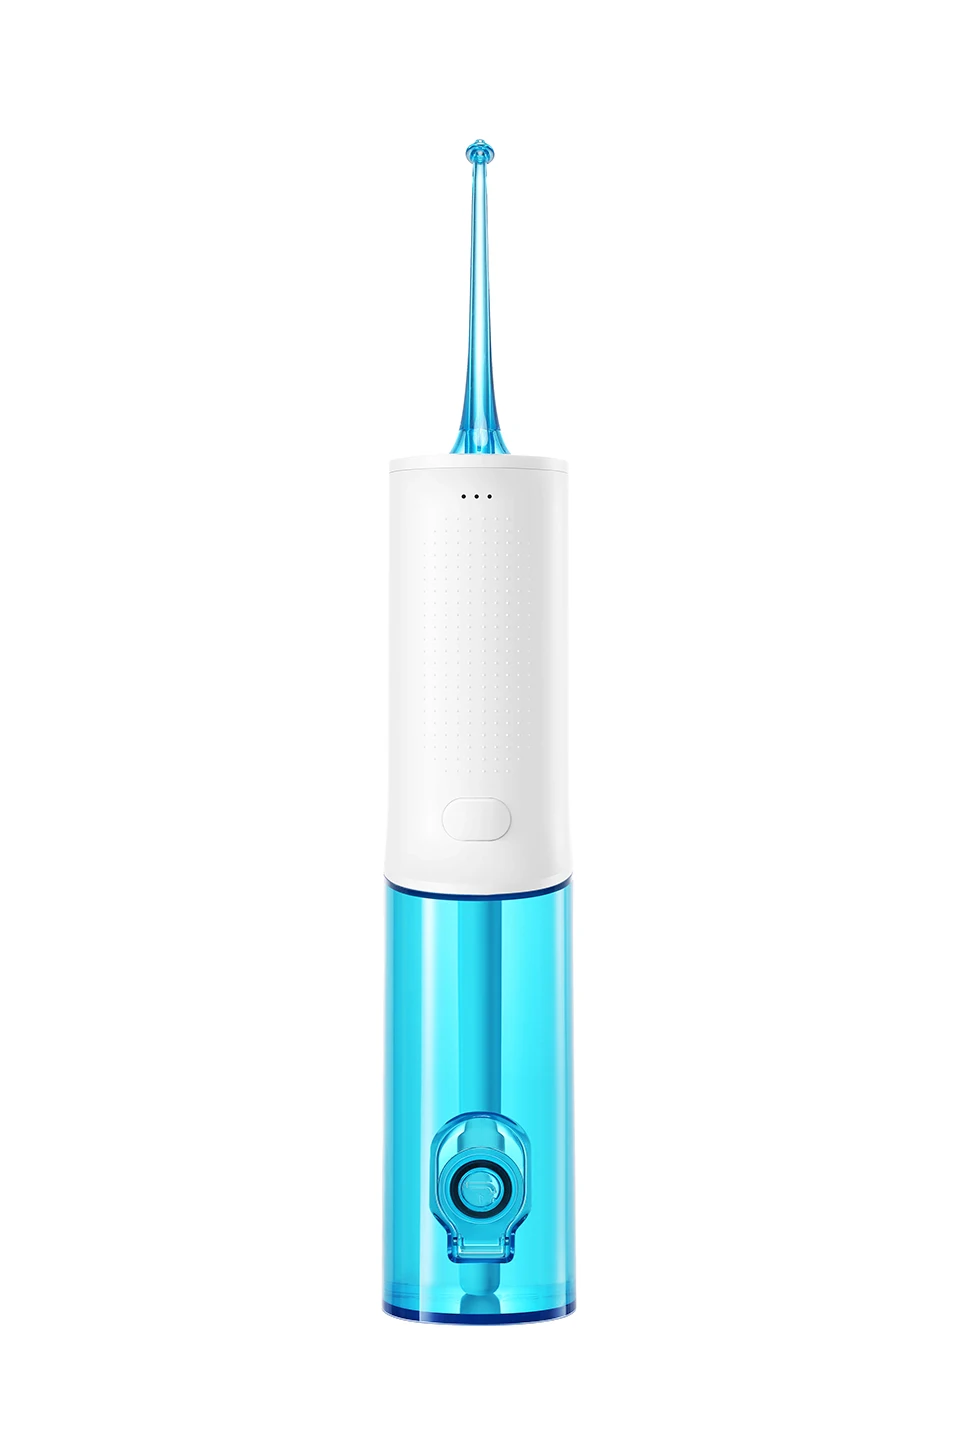 SOOCAS W3 портативный ирригатор для полости рта для чистки зубов струя воды USB Перезаряжаемый водный зубной Флоссер 2200mAh Ирригатор